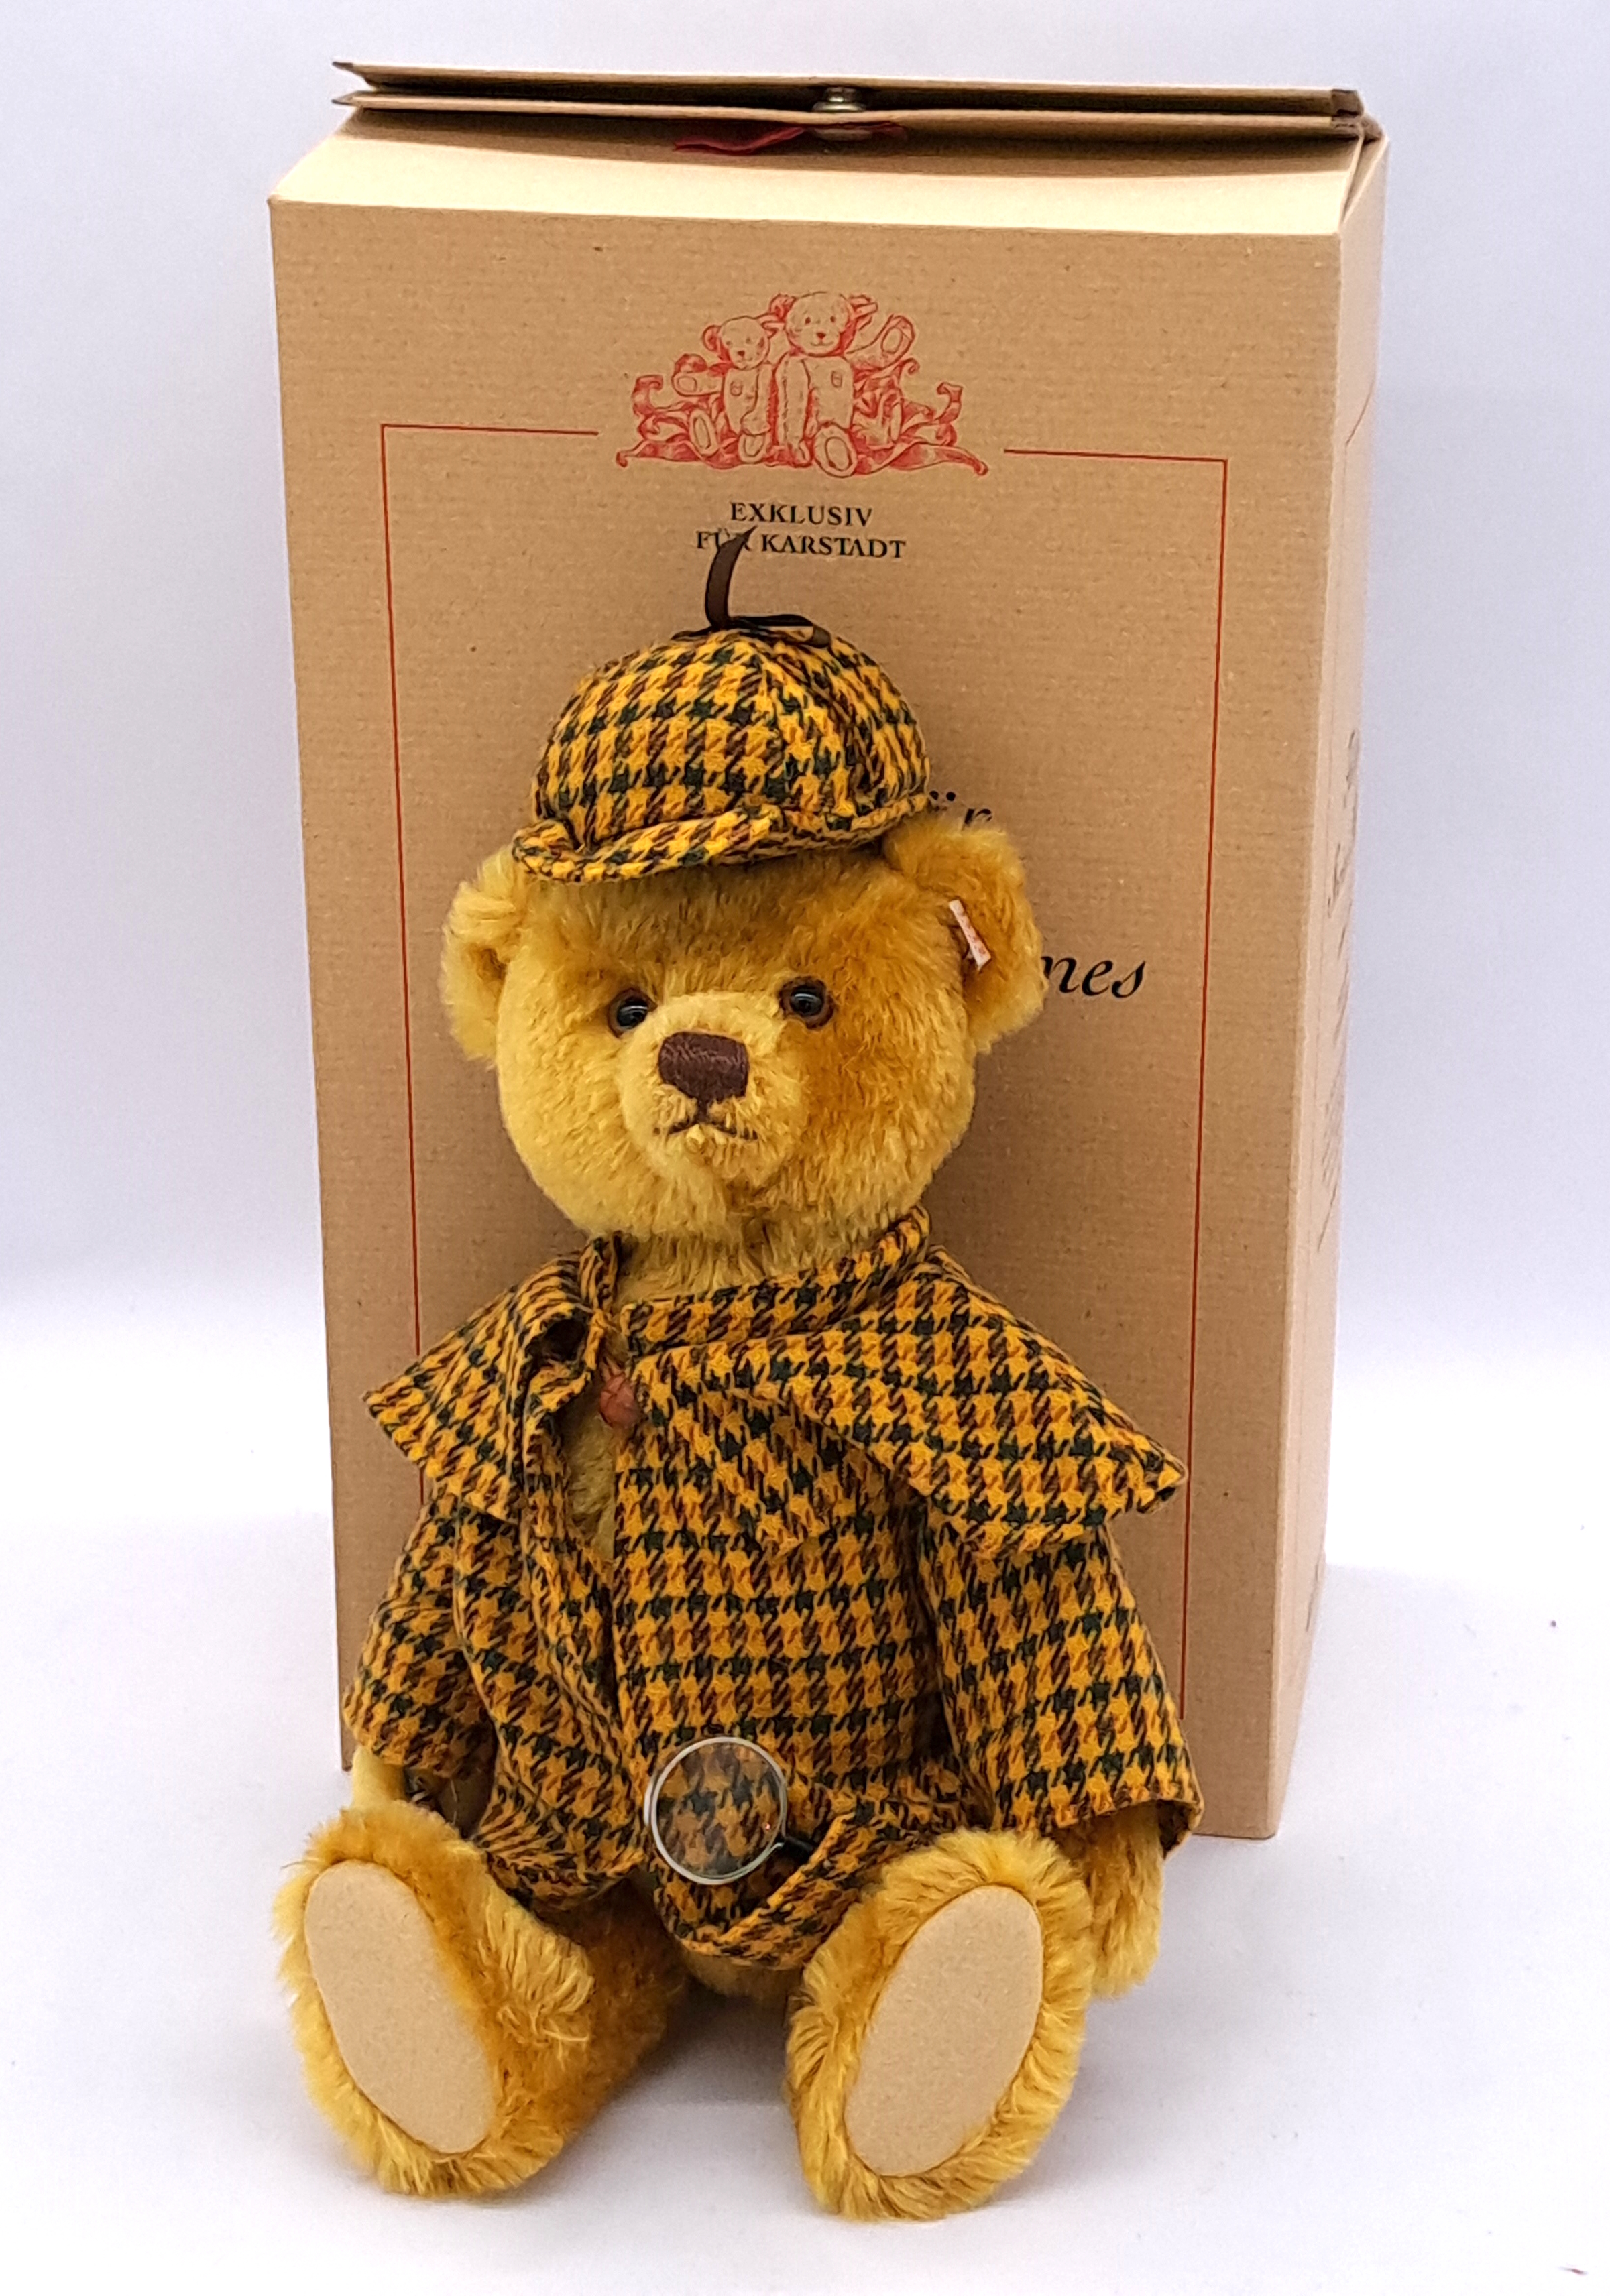 Steiff Karstadt Sherlock Holmes teddy bear, 2002